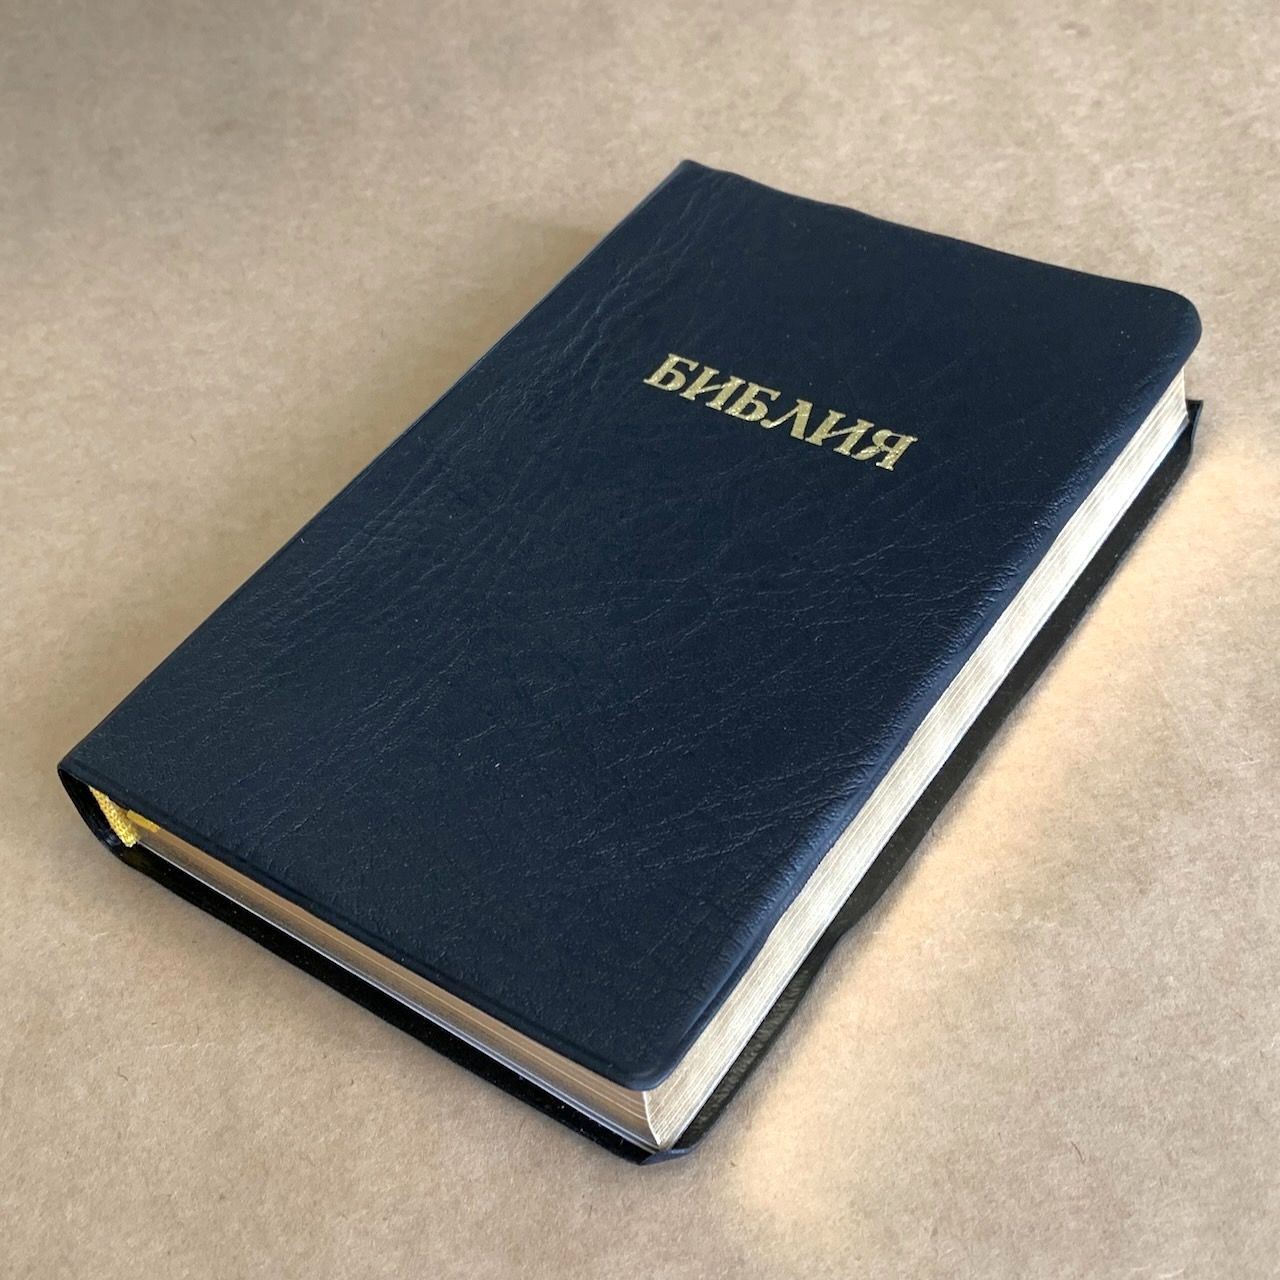 Библия 048 код E8 надпись "библия", переплет искусственной кожи, цвет черный, формат 125*190 мм, золотой обрез, синодальный перевод, паралельные места по центру страницы, 2 закладки, шрифт 10-11 кегель, цветные карты